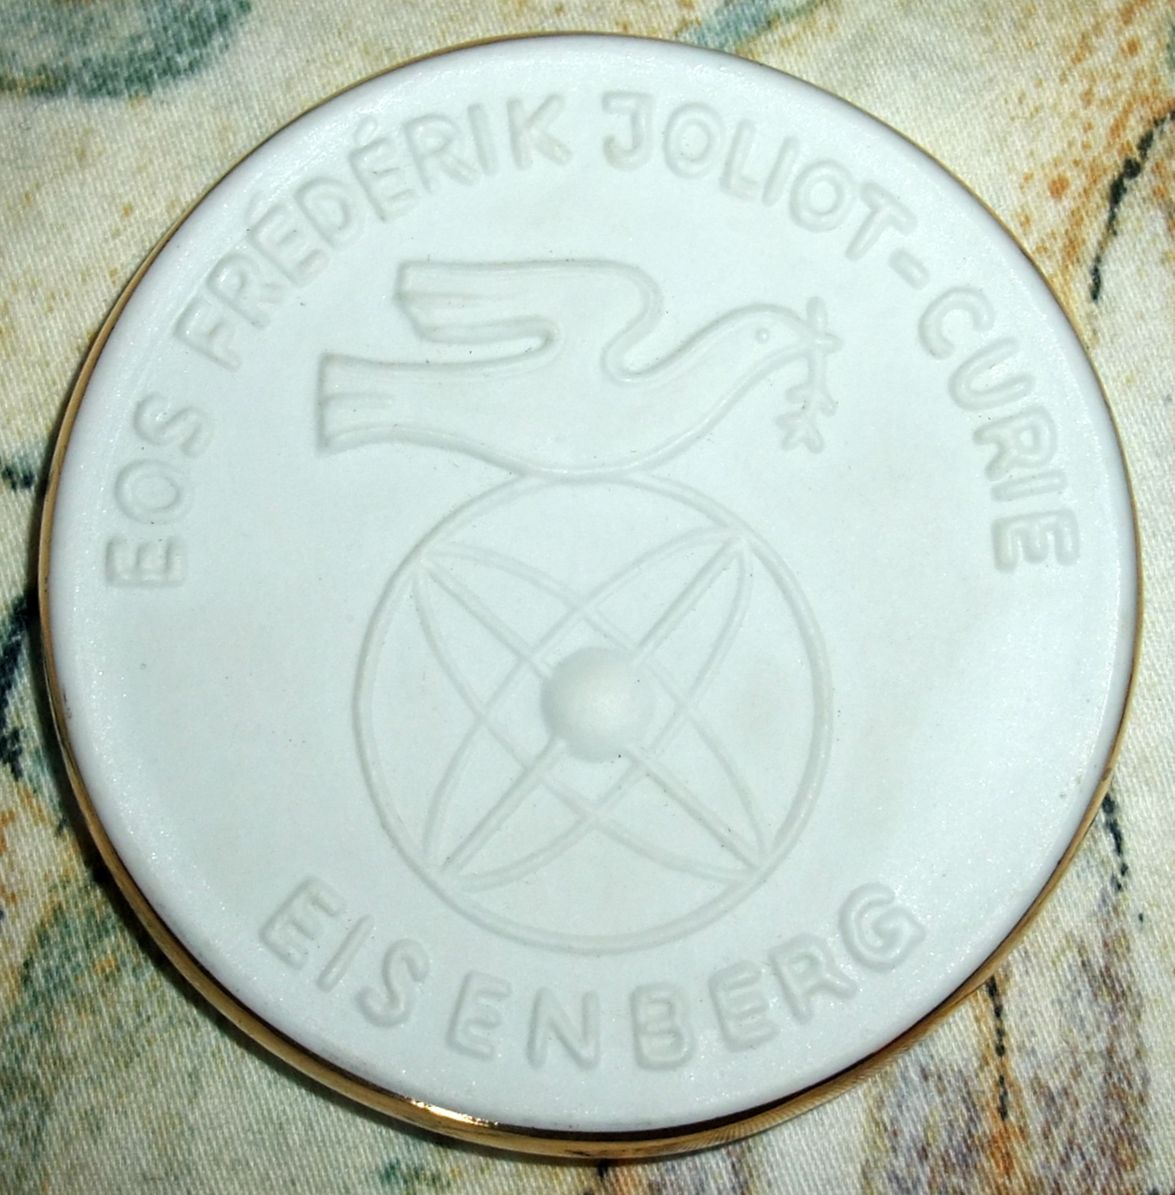 Medaille zum Abitur 1976, Eisenberg, EOS Frederik Joliot-Curie - Rückseite